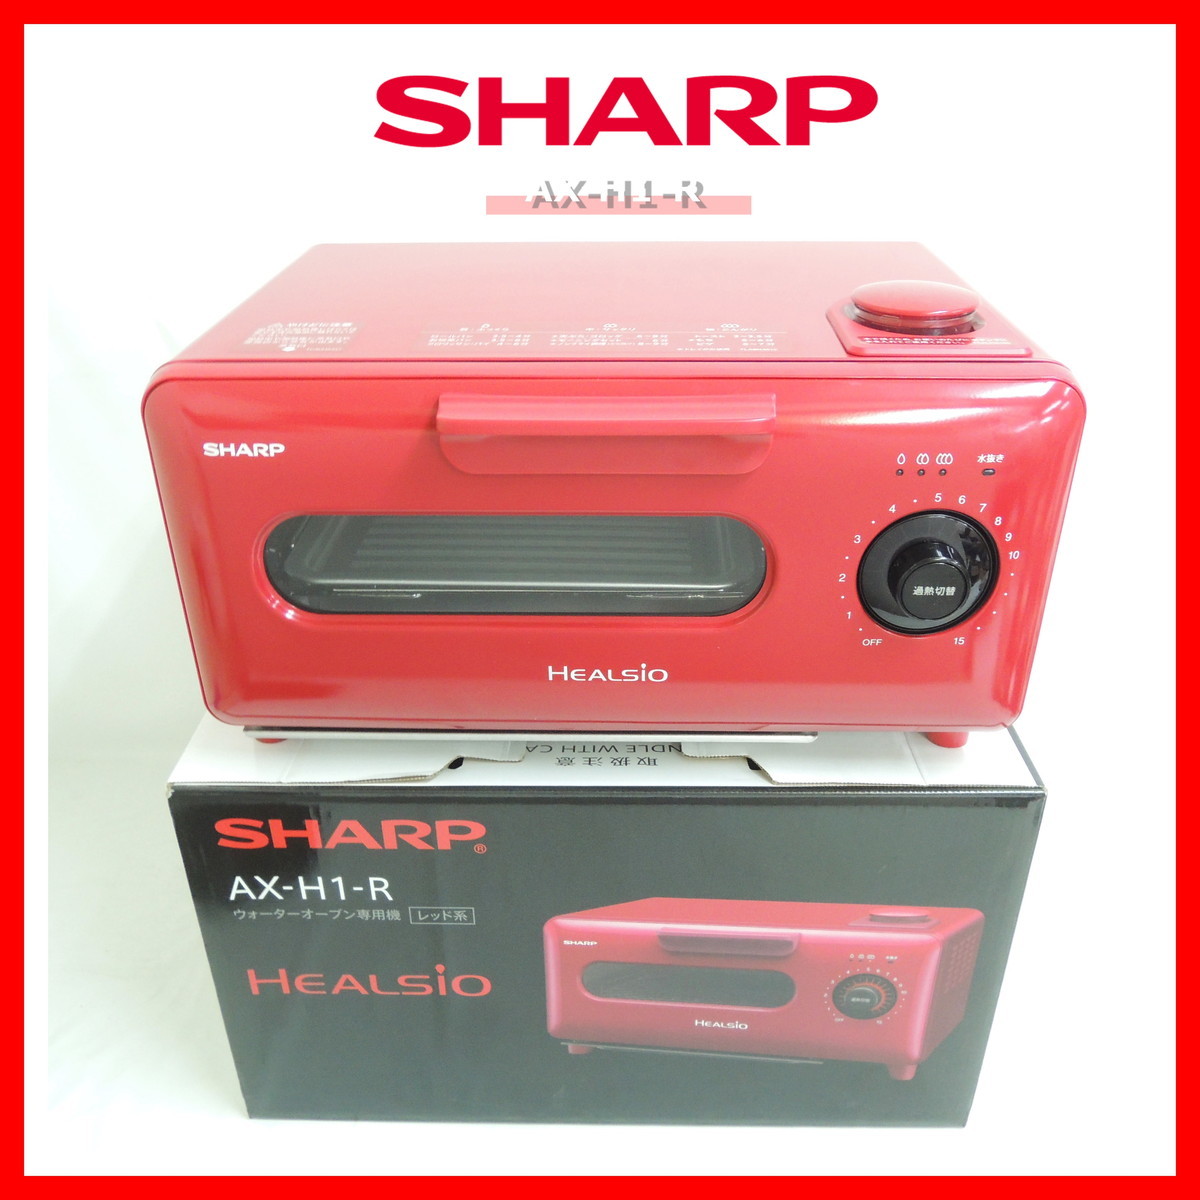 新品未使用品 シャープ AX-H1-R ヘルシオ ウォーターオーブン 専用機 レッド系 SHARP HEALSIO_画像1